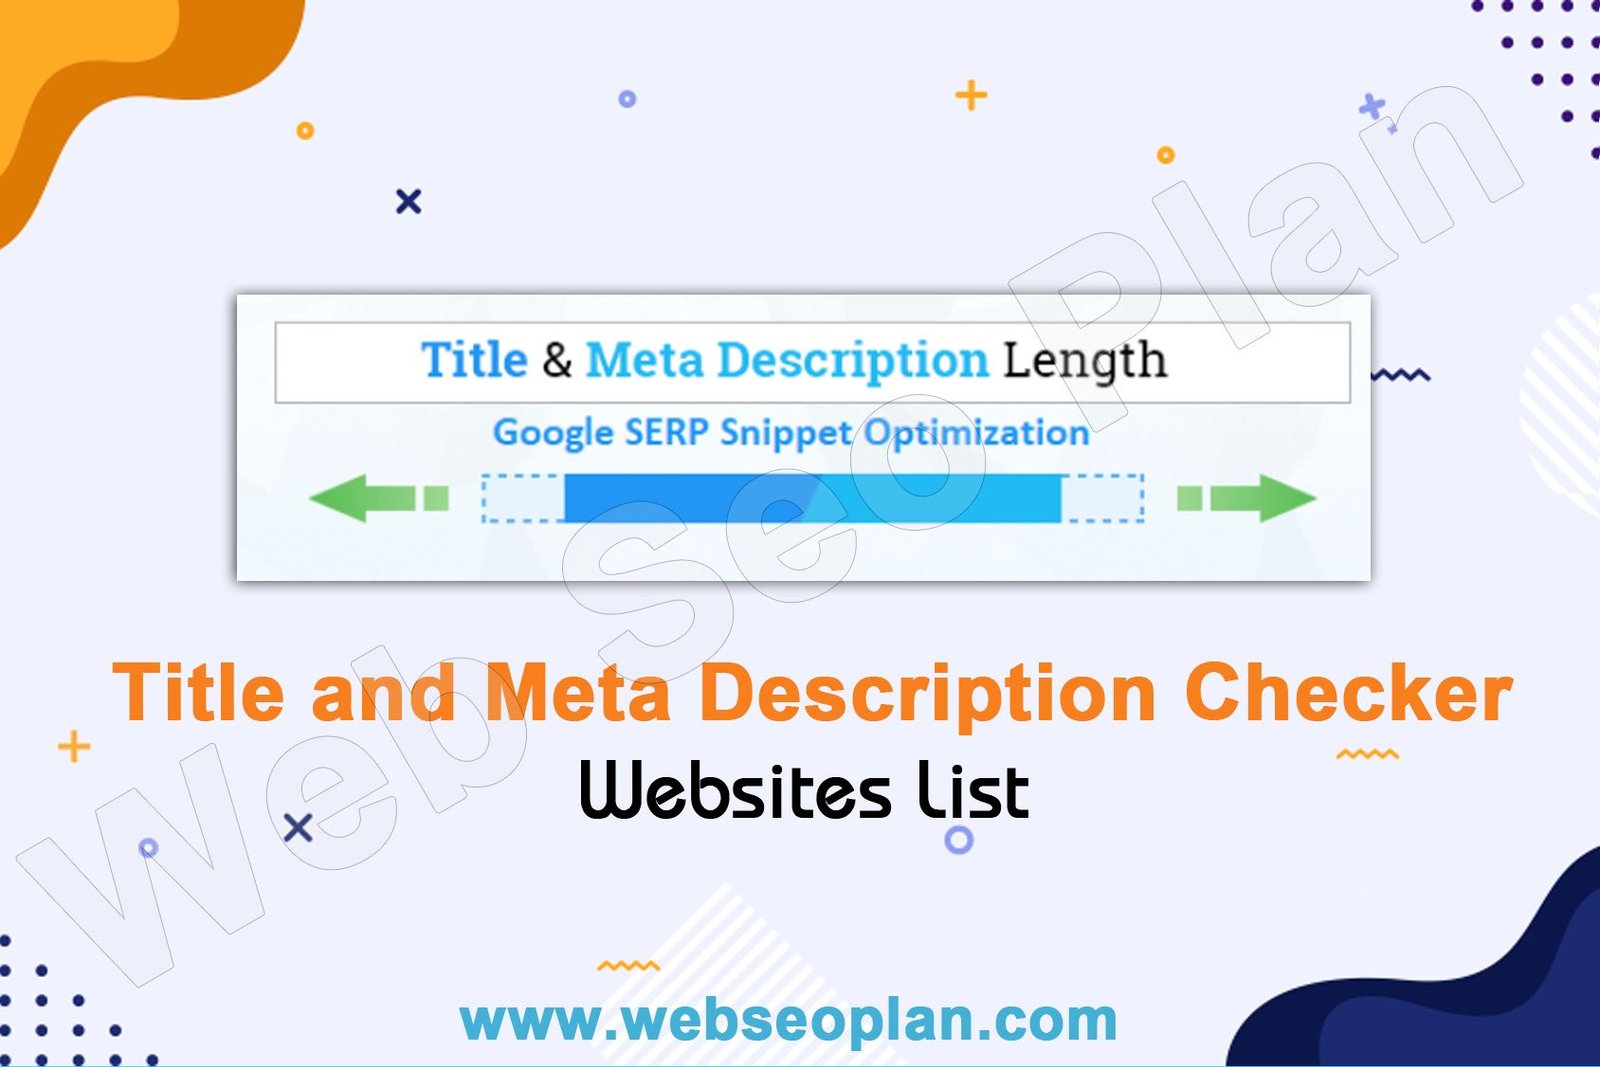 Title and Meta Description Checker